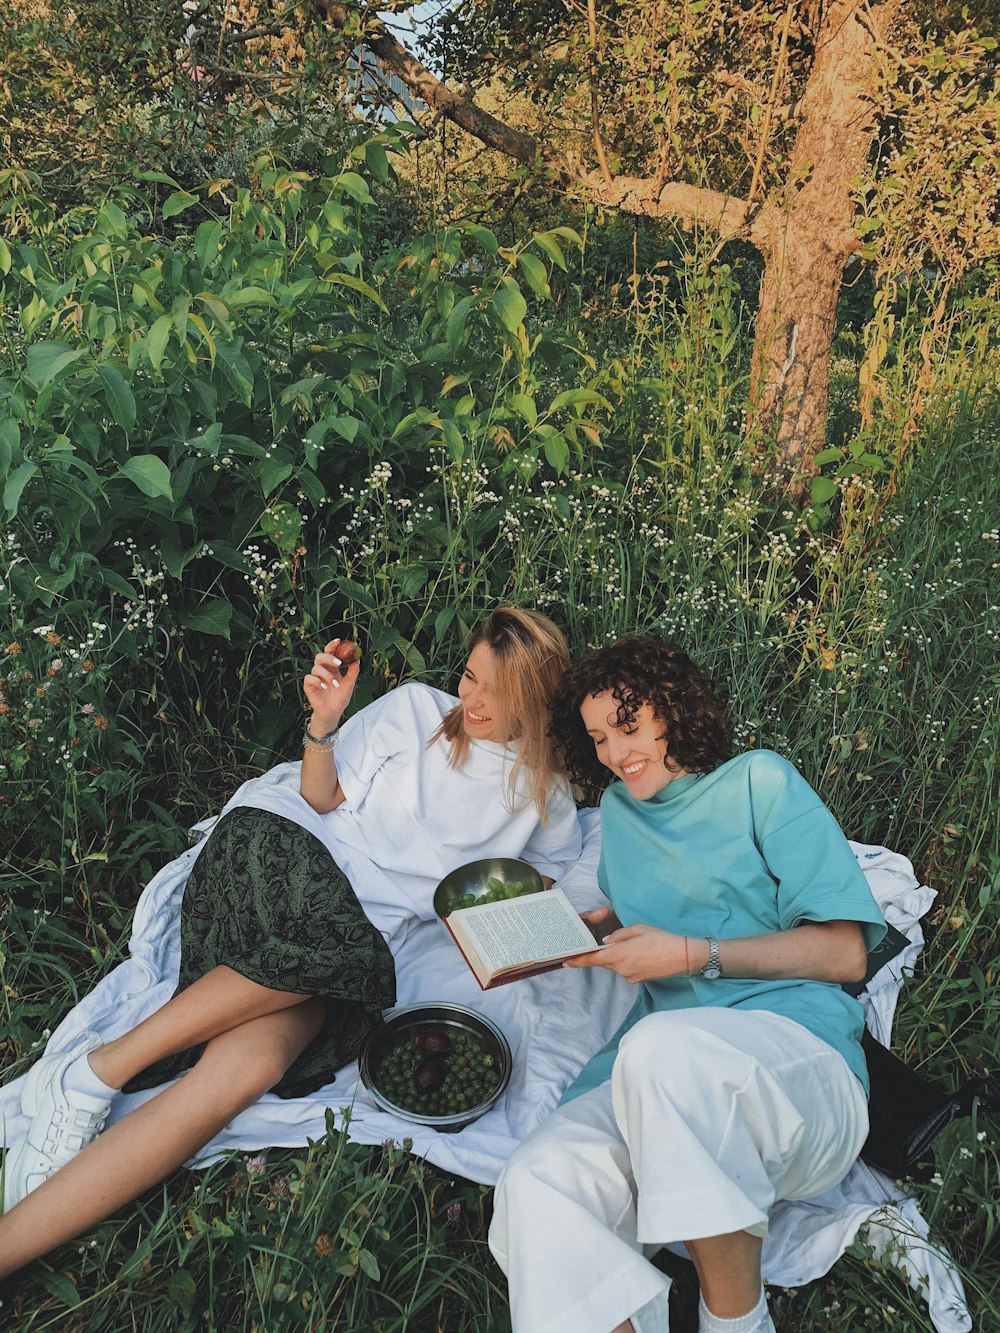 하얀 침대에 앉아 책을 읽는 남자와 여자